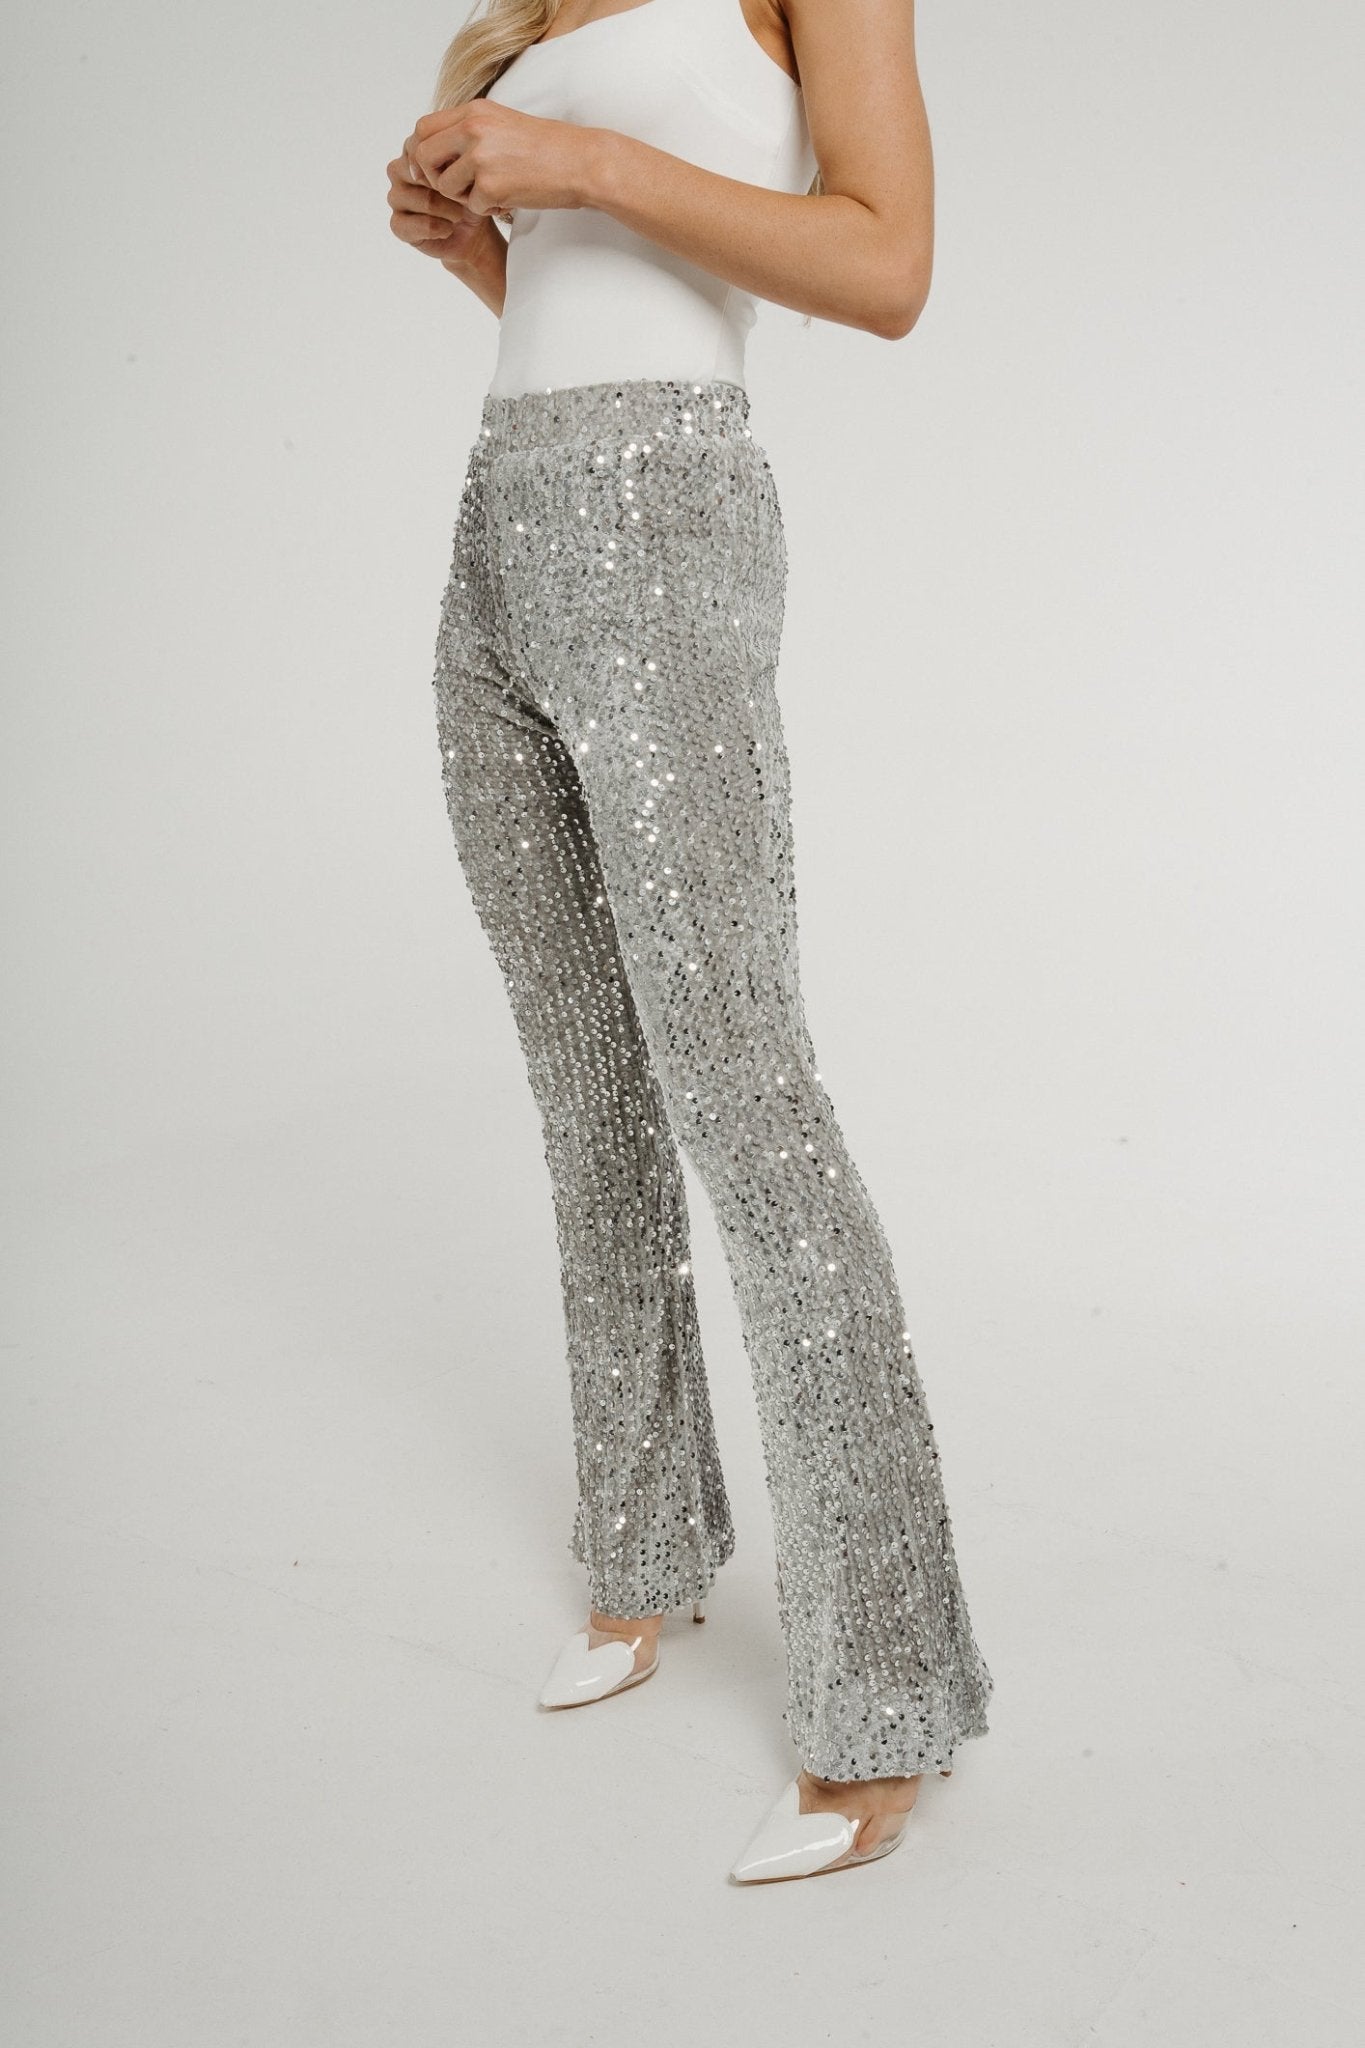 Jane Sequin Trouser In Silver - The Walk in Wardrobe